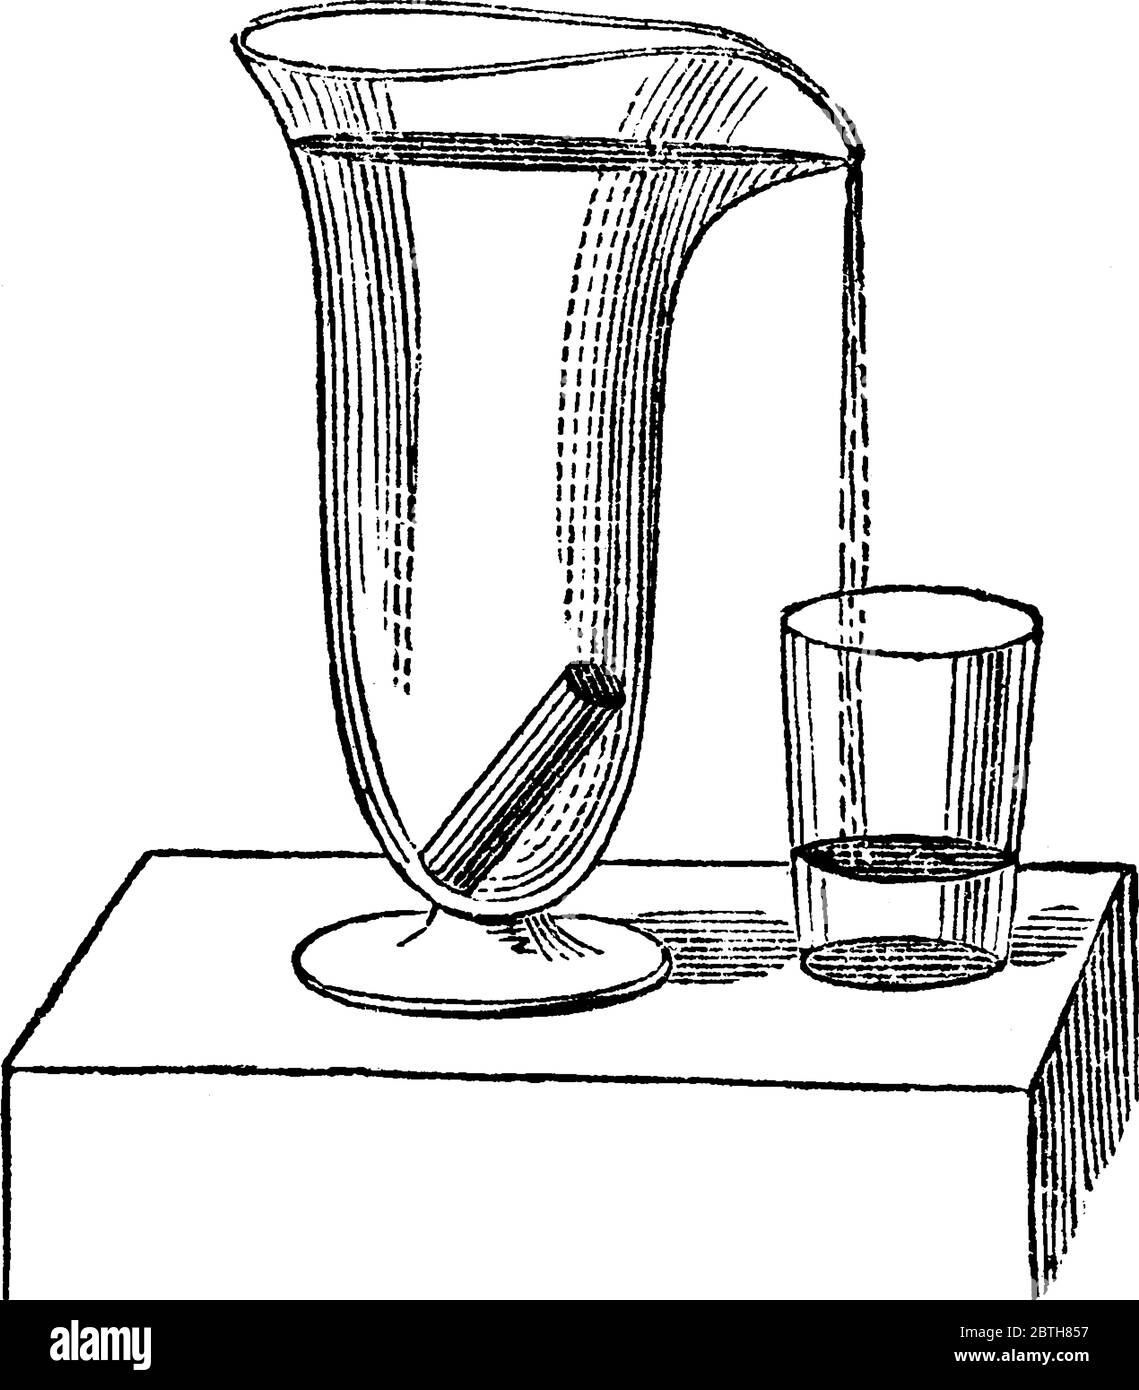 Ein experimenteller Aufbau, in dem der Festkörper seinen Großteil des Wassers verdrängt, wobei die Verdrängungstheorie angegeben wird. Die Menge der Flüssigkeit verdrängt ist direkt rela Stock Vektor